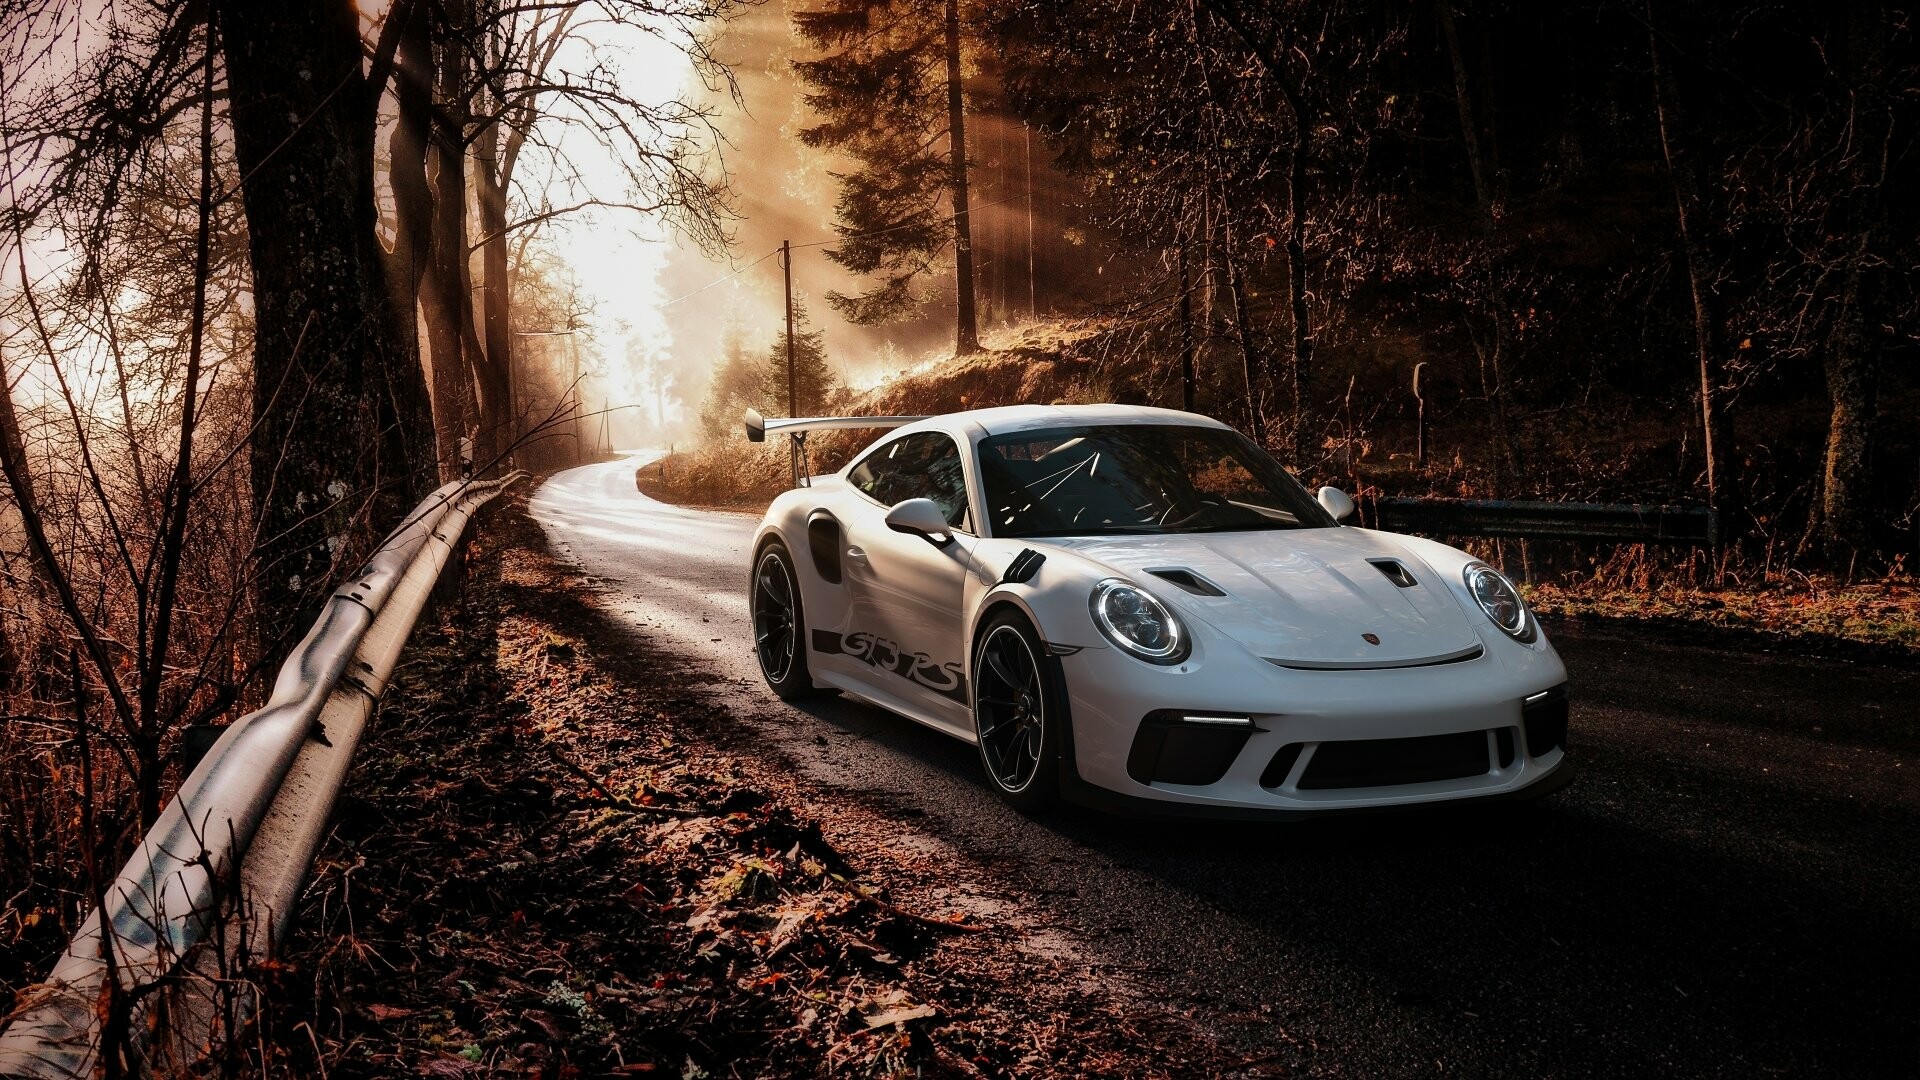 Porsche GT3, Autoexzellenz, 4K Luxus, Ultimative Leistung, 1920x1080 Full HD Desktop